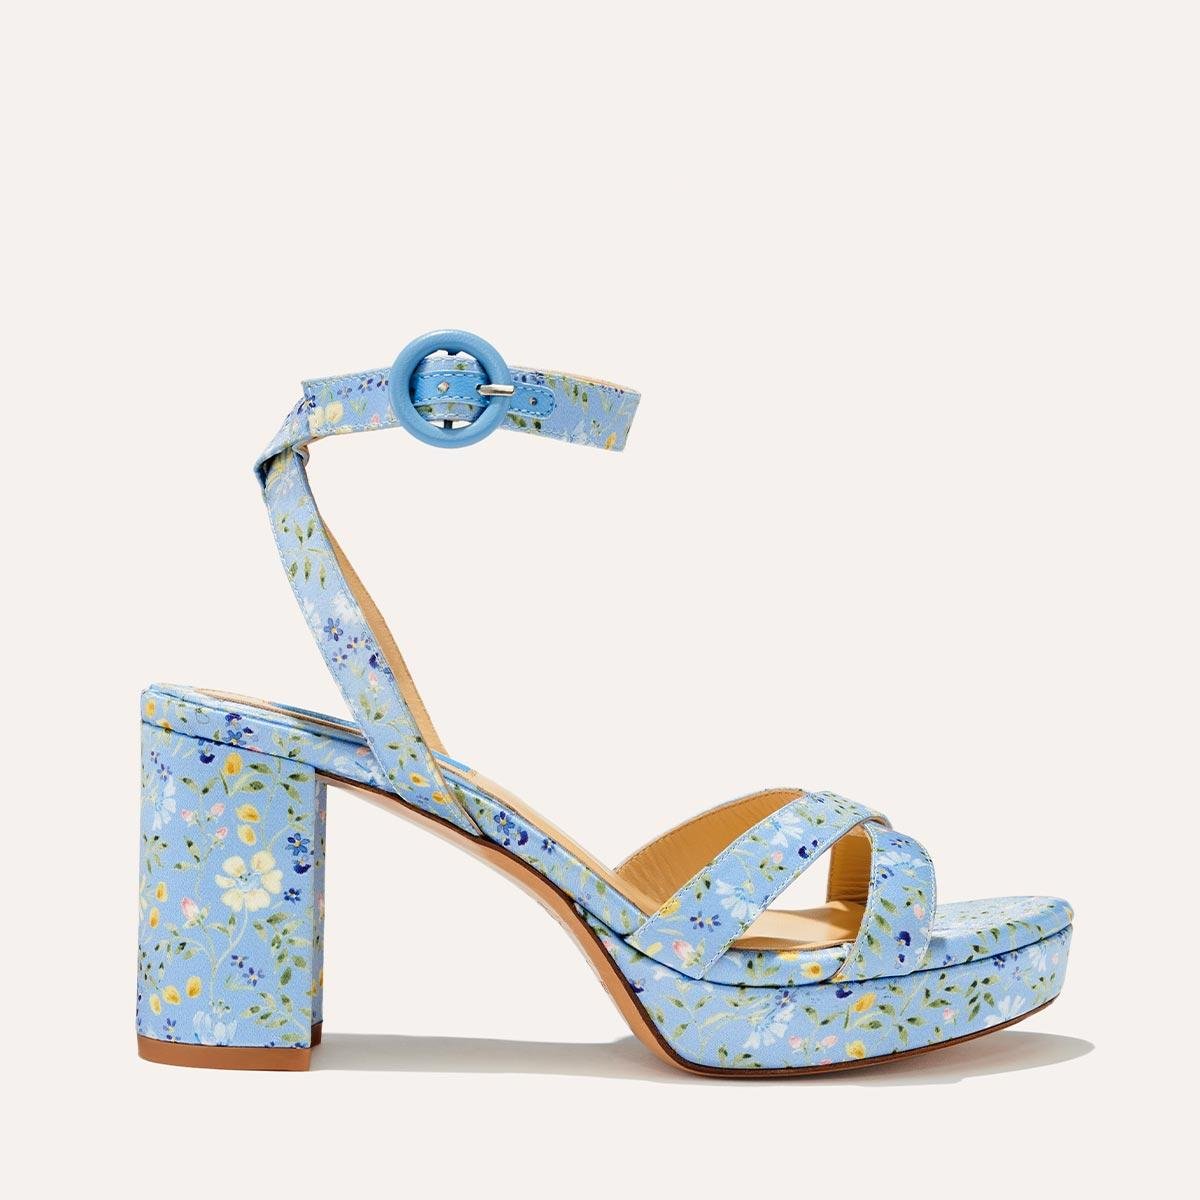 The Platform Sandal - Blue Floral Satin by MARGAUX